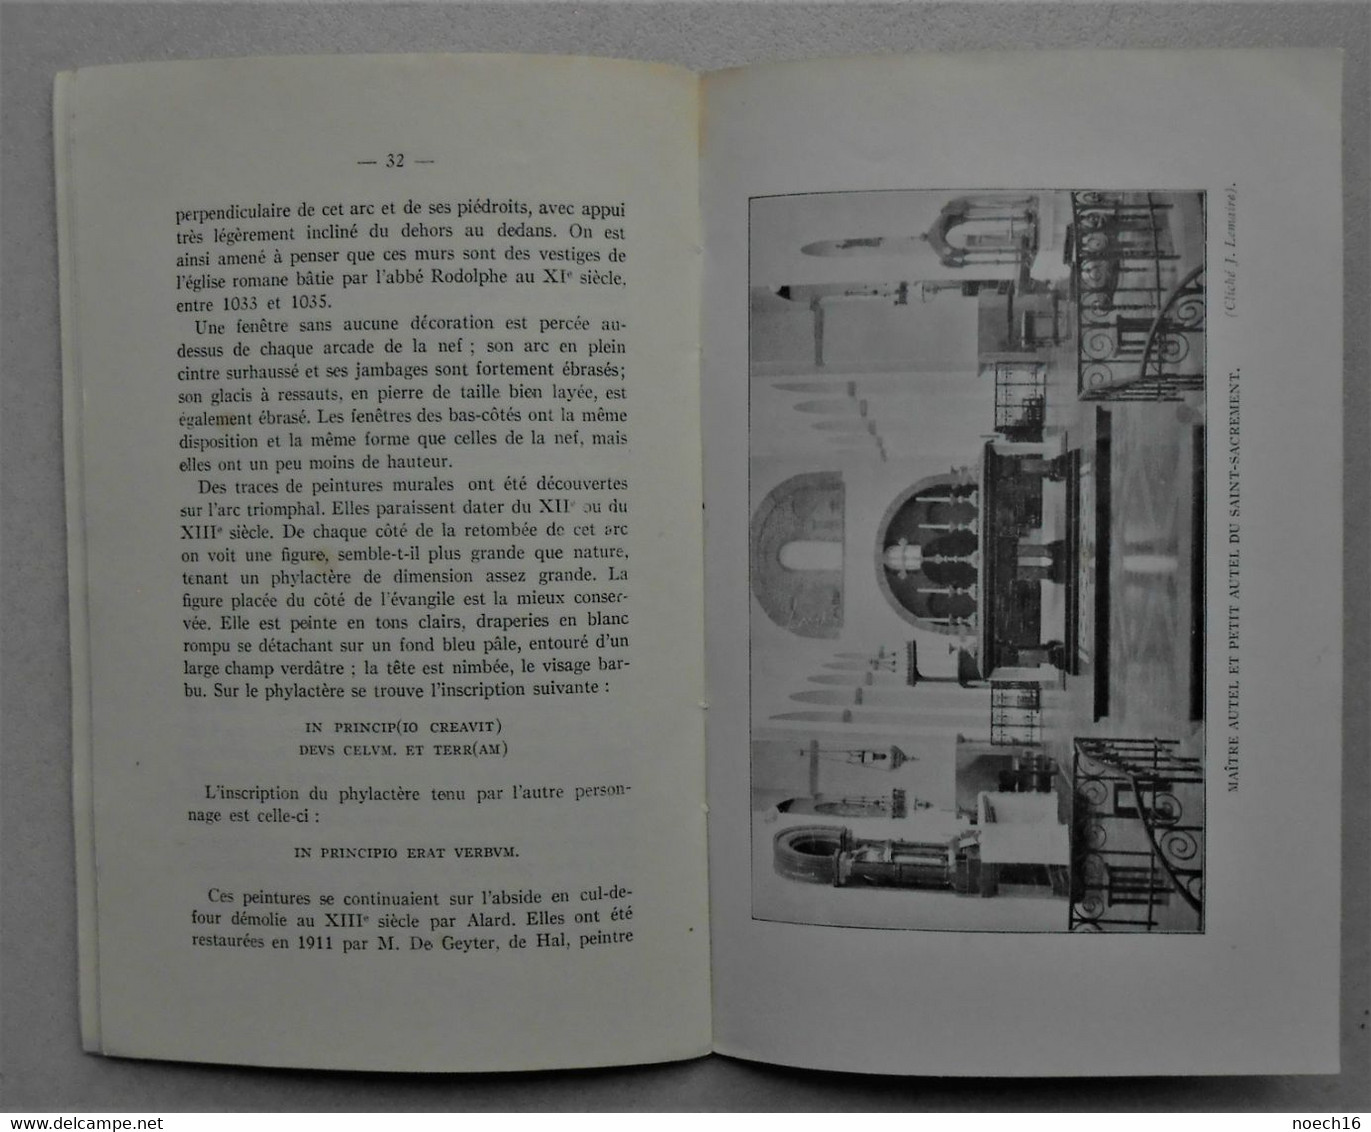 Petit Livre, 48 Pages, Hastière-Notre-Dame,  Imprimerie Duculot, Gembloux 1929 - Belgium